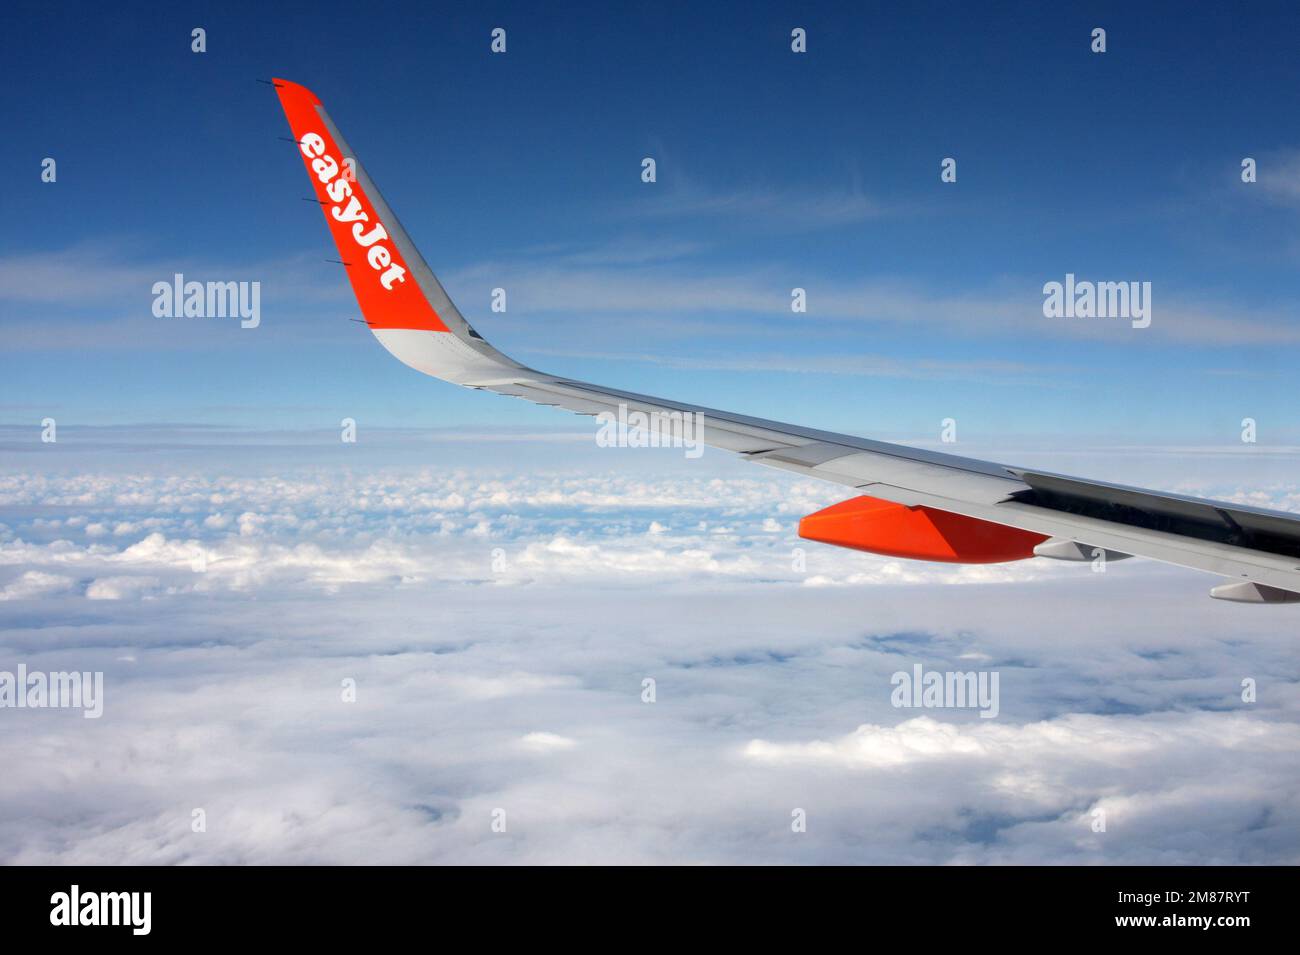 Fensterblick von einem easyjet Airbus, der über der Wolke fährt Stockfoto